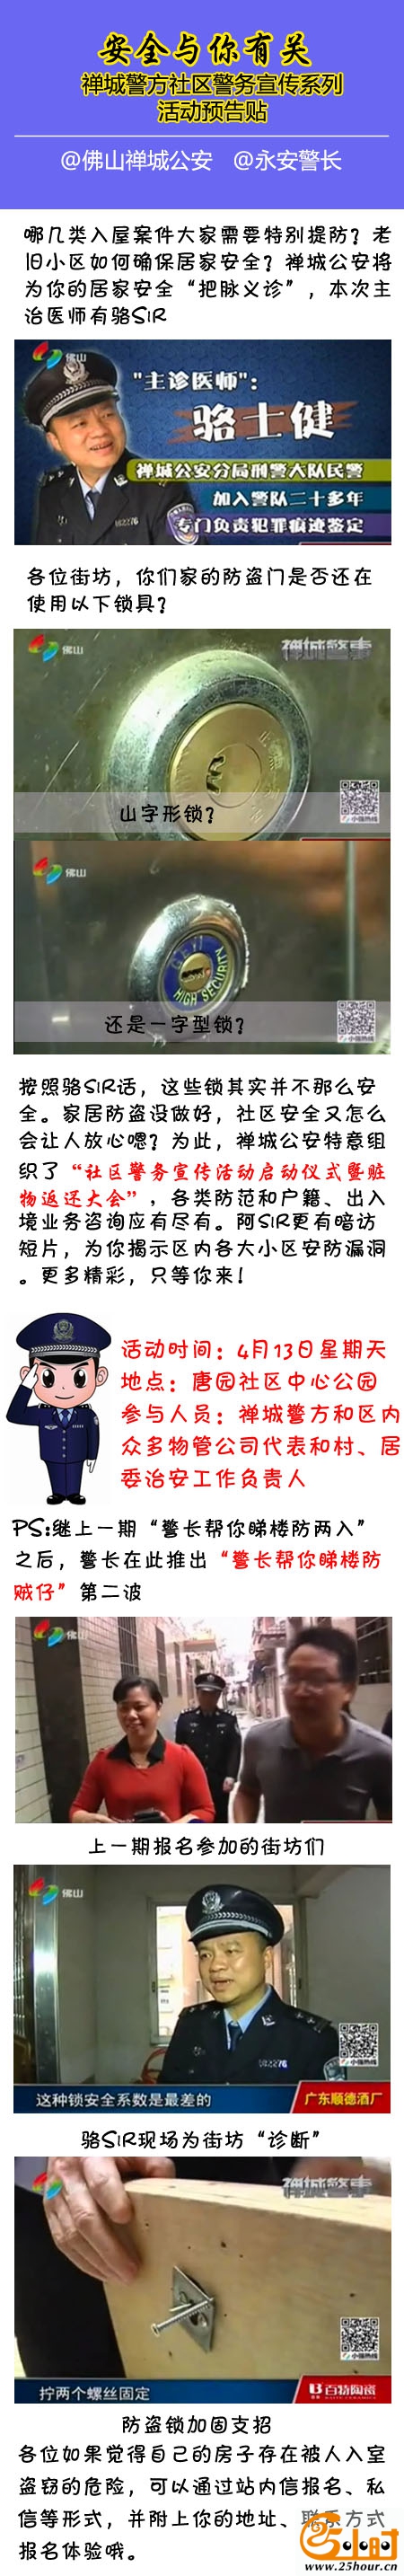 【安全与你有关】 禅城警方社区警务宣传系列活动预告帖